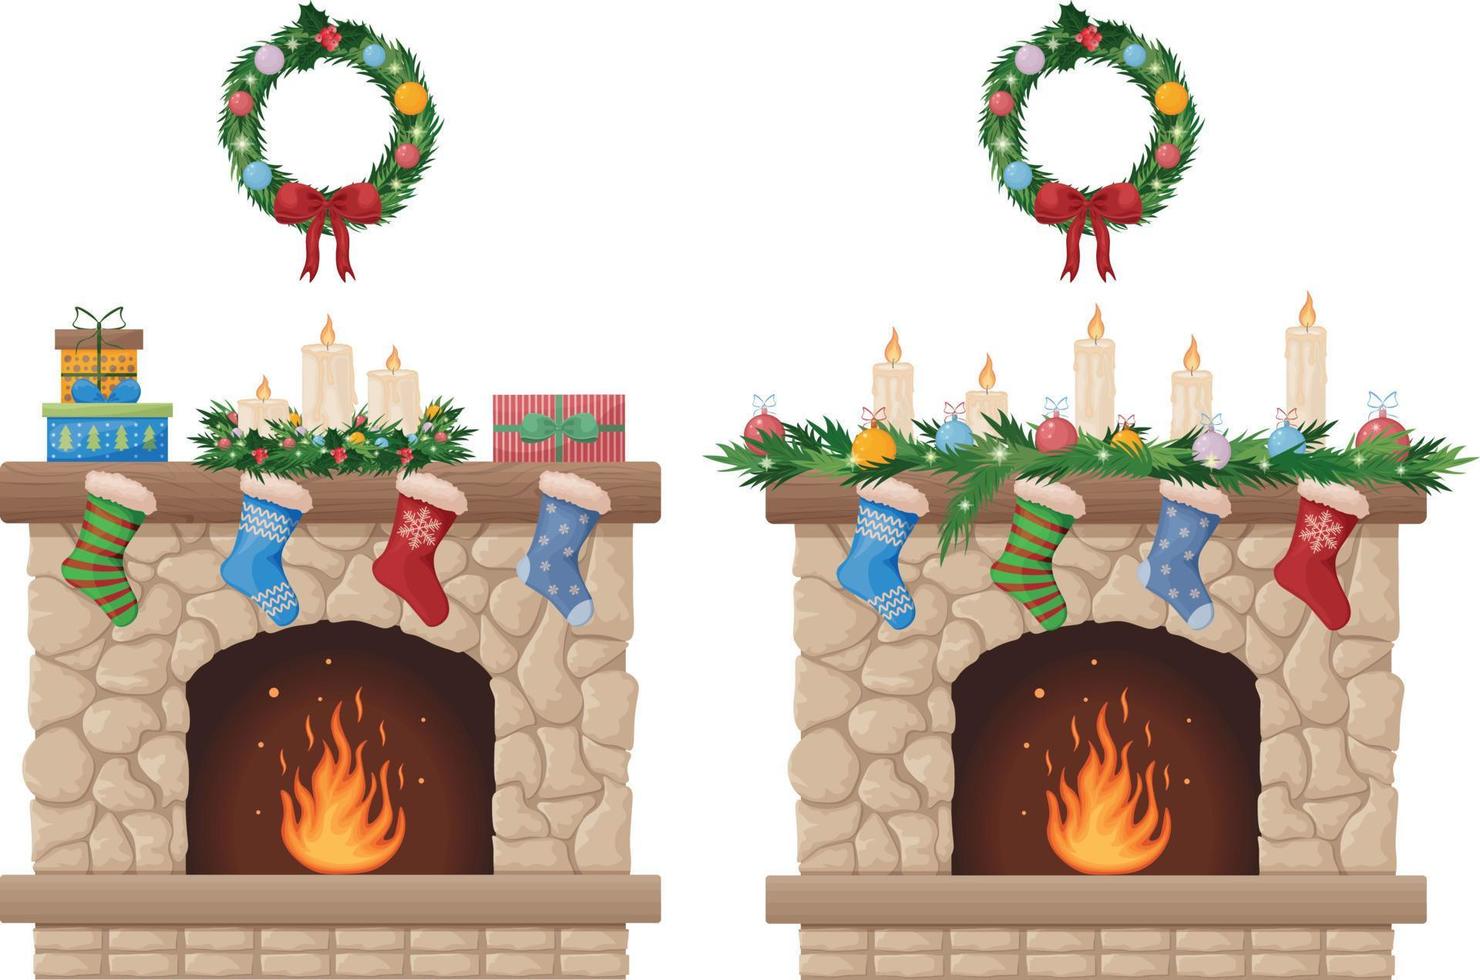 öppen spis. jul öppen spis med en jul krans och strumpor för gåvor. öppen spis med brand och festlig dekorationer. vektor illustration